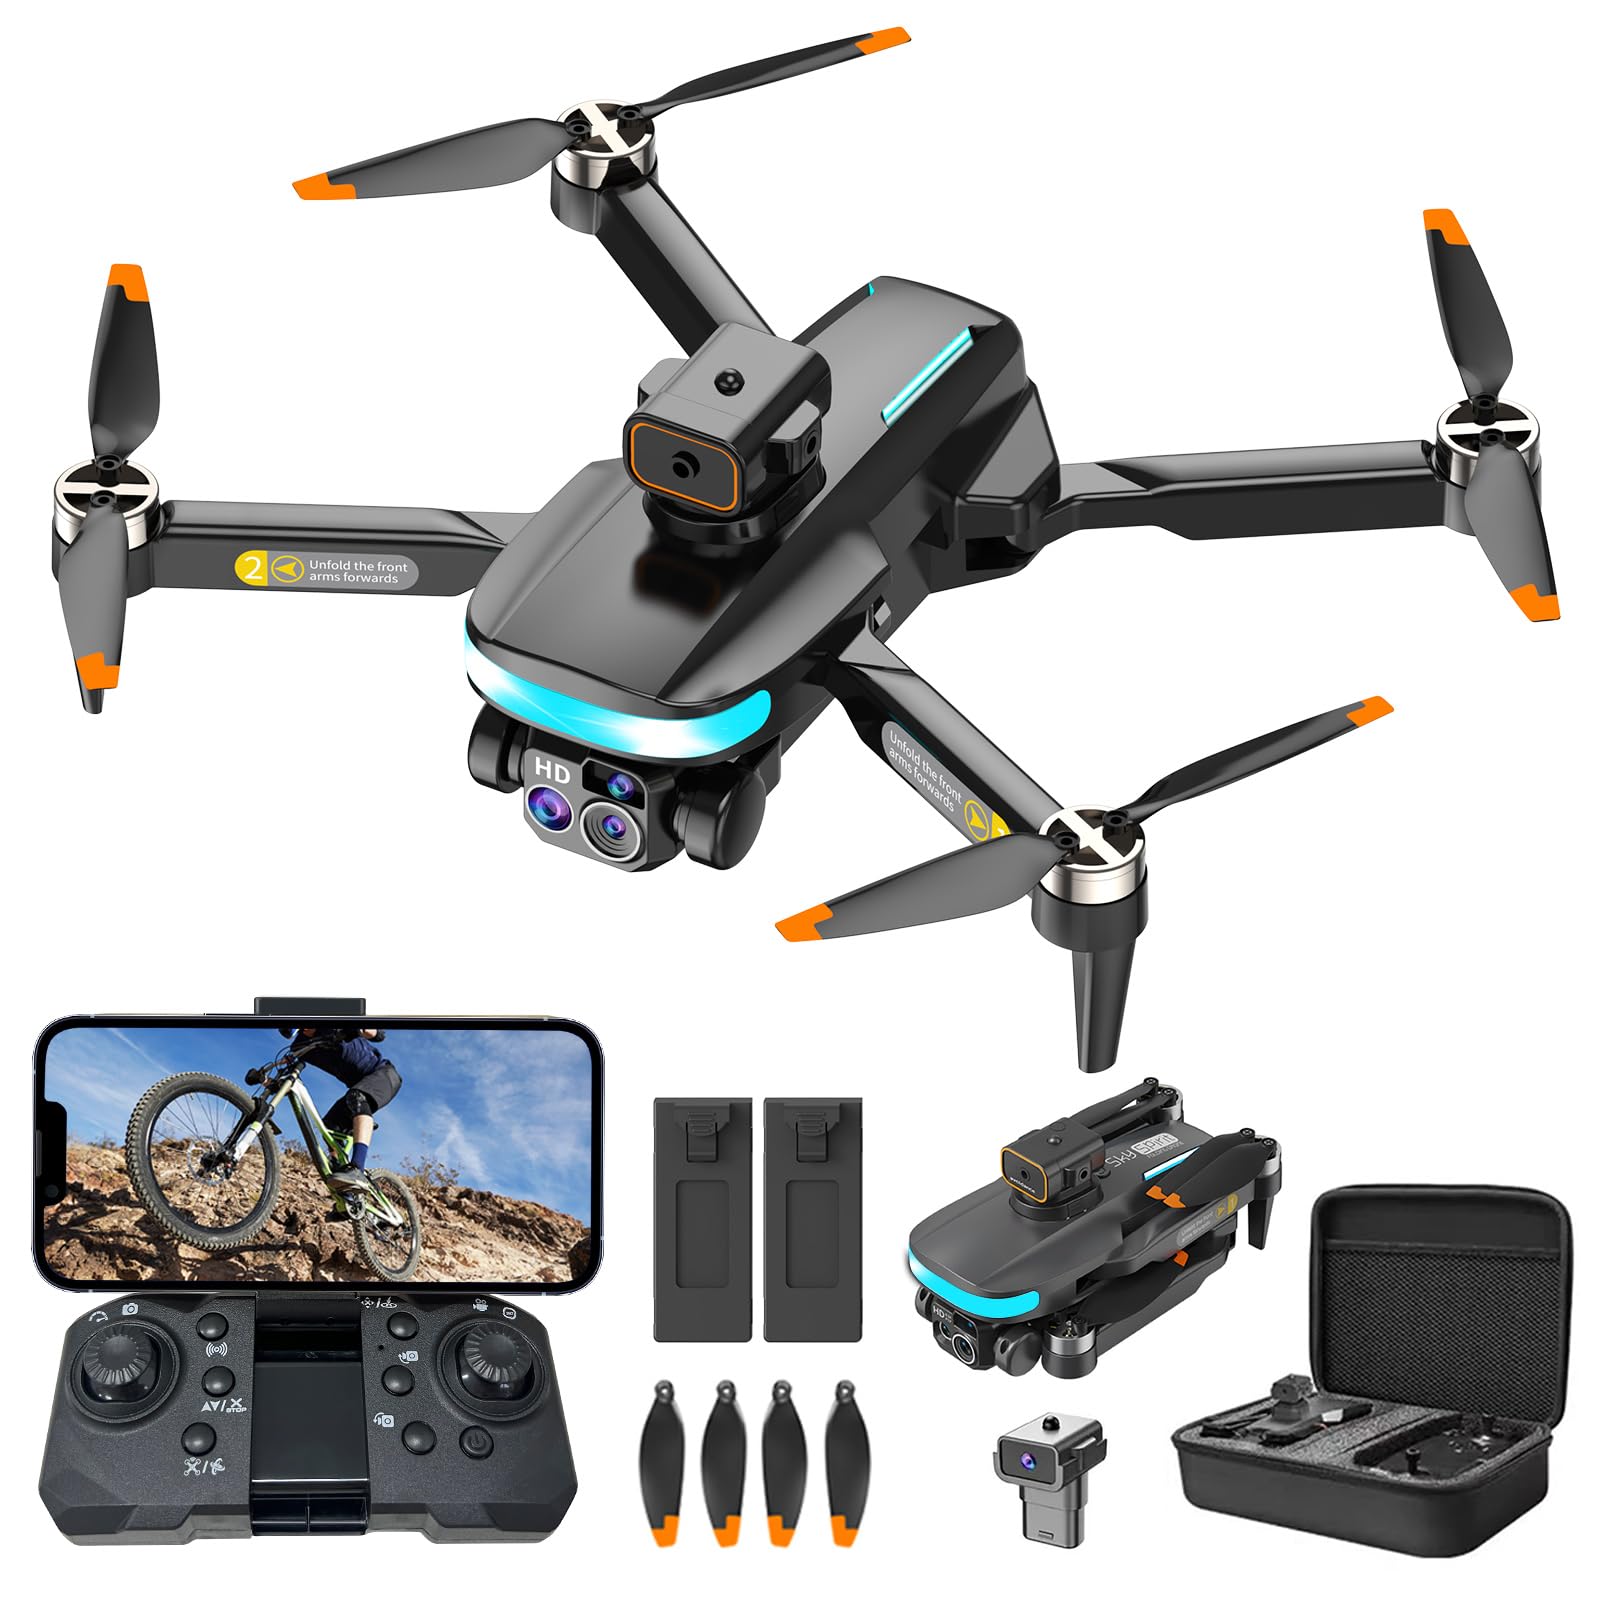 OBEST Mini Drohne Mit 4K Kamera,RC Faltbare WIFI Drohne,360° Hindernisvermeidung,Automatische Rückkehr,RC Quadcopter,Kopfloser Modus,2 Batterien,Kinder,Erwachsene,Spielzeug und Geschenke